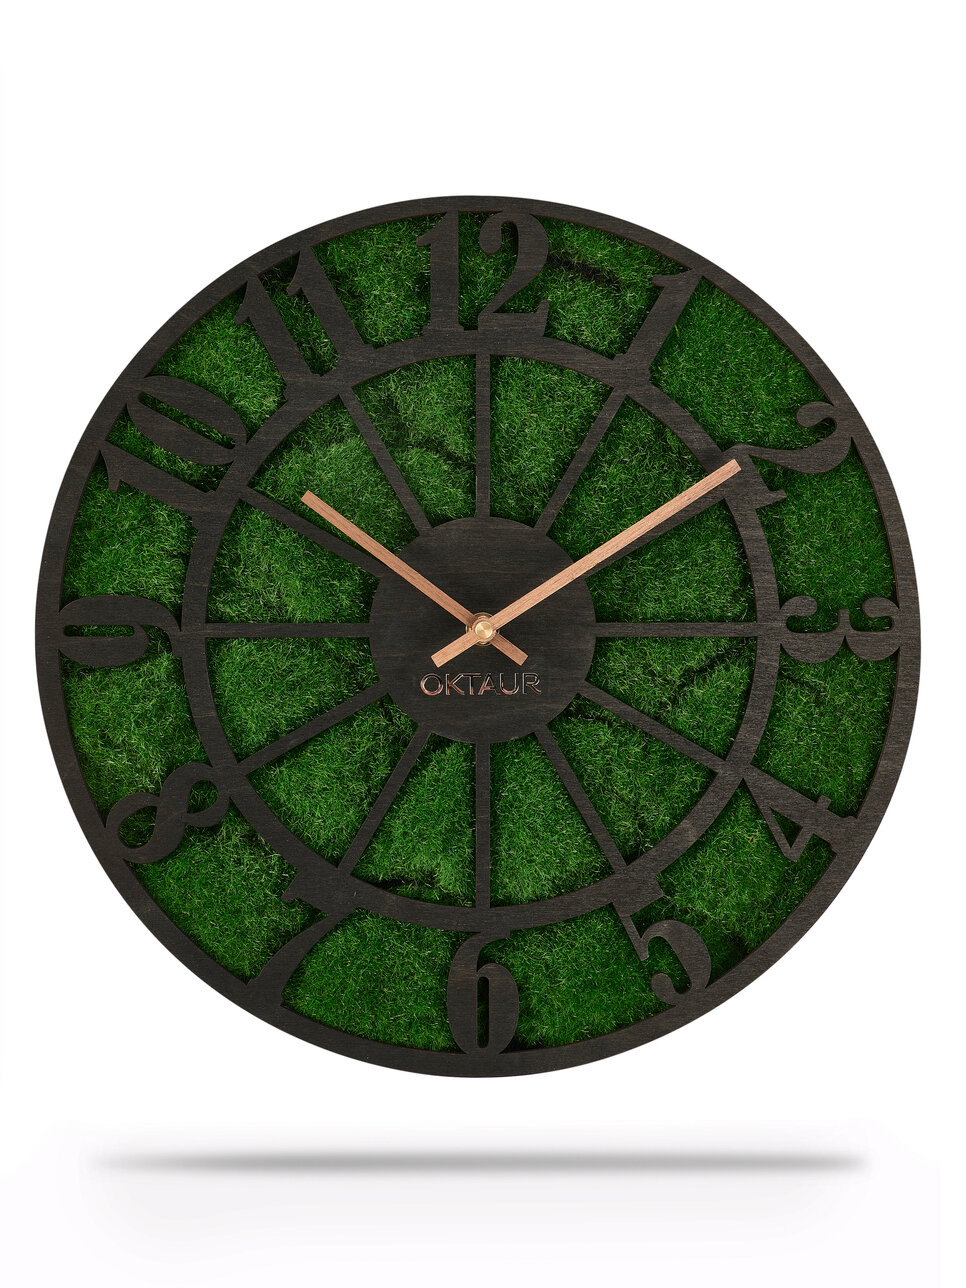 Часы настенные "кирия" бесшумные интерьерные деревянные 37 см. Декор с искусственным мхом. Лофт для дома, офиса, кафе, ресторана. Дизайнерские часы.